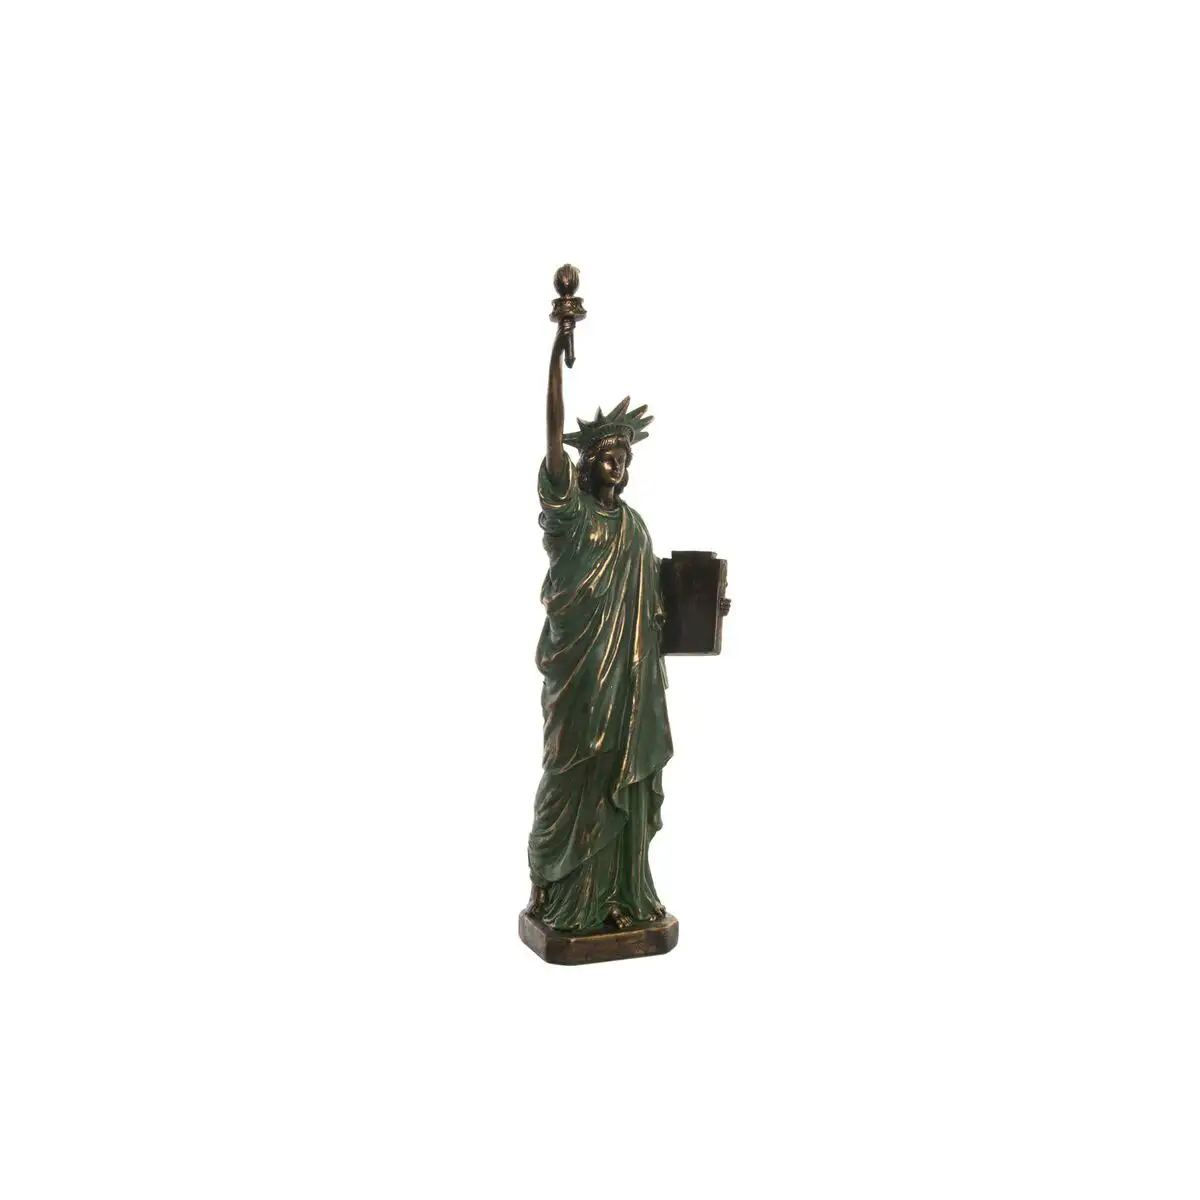 Figurine decorative dkd home decor statue of liberty 15 x 10 x 48 cm dore vert loft_7098. Bienvenue sur DIAYTAR SENEGAL - Où Choisir est un Voyage Passionnant. Plongez dans notre catalogue et trouvez des produits qui révèlent la diversité et la beauté du Sénégal.